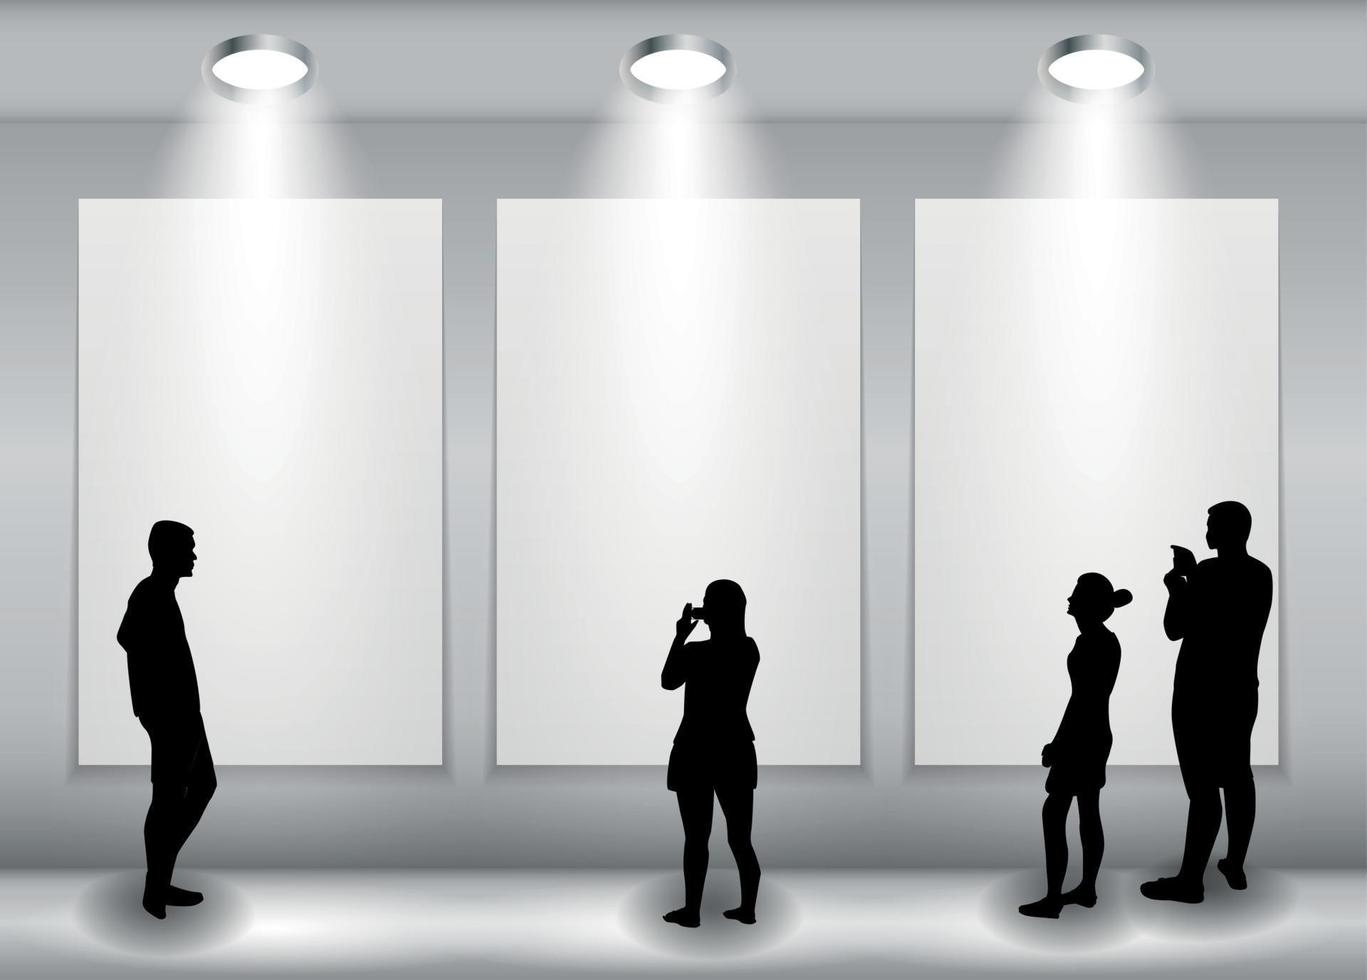 silhouette di persone sullo sfondo con lampada di illuminazione e cornice guarda lo spazio vuoto per il tuo testo, oggetto o pubblicità. illustrazione vettoriale. vettore